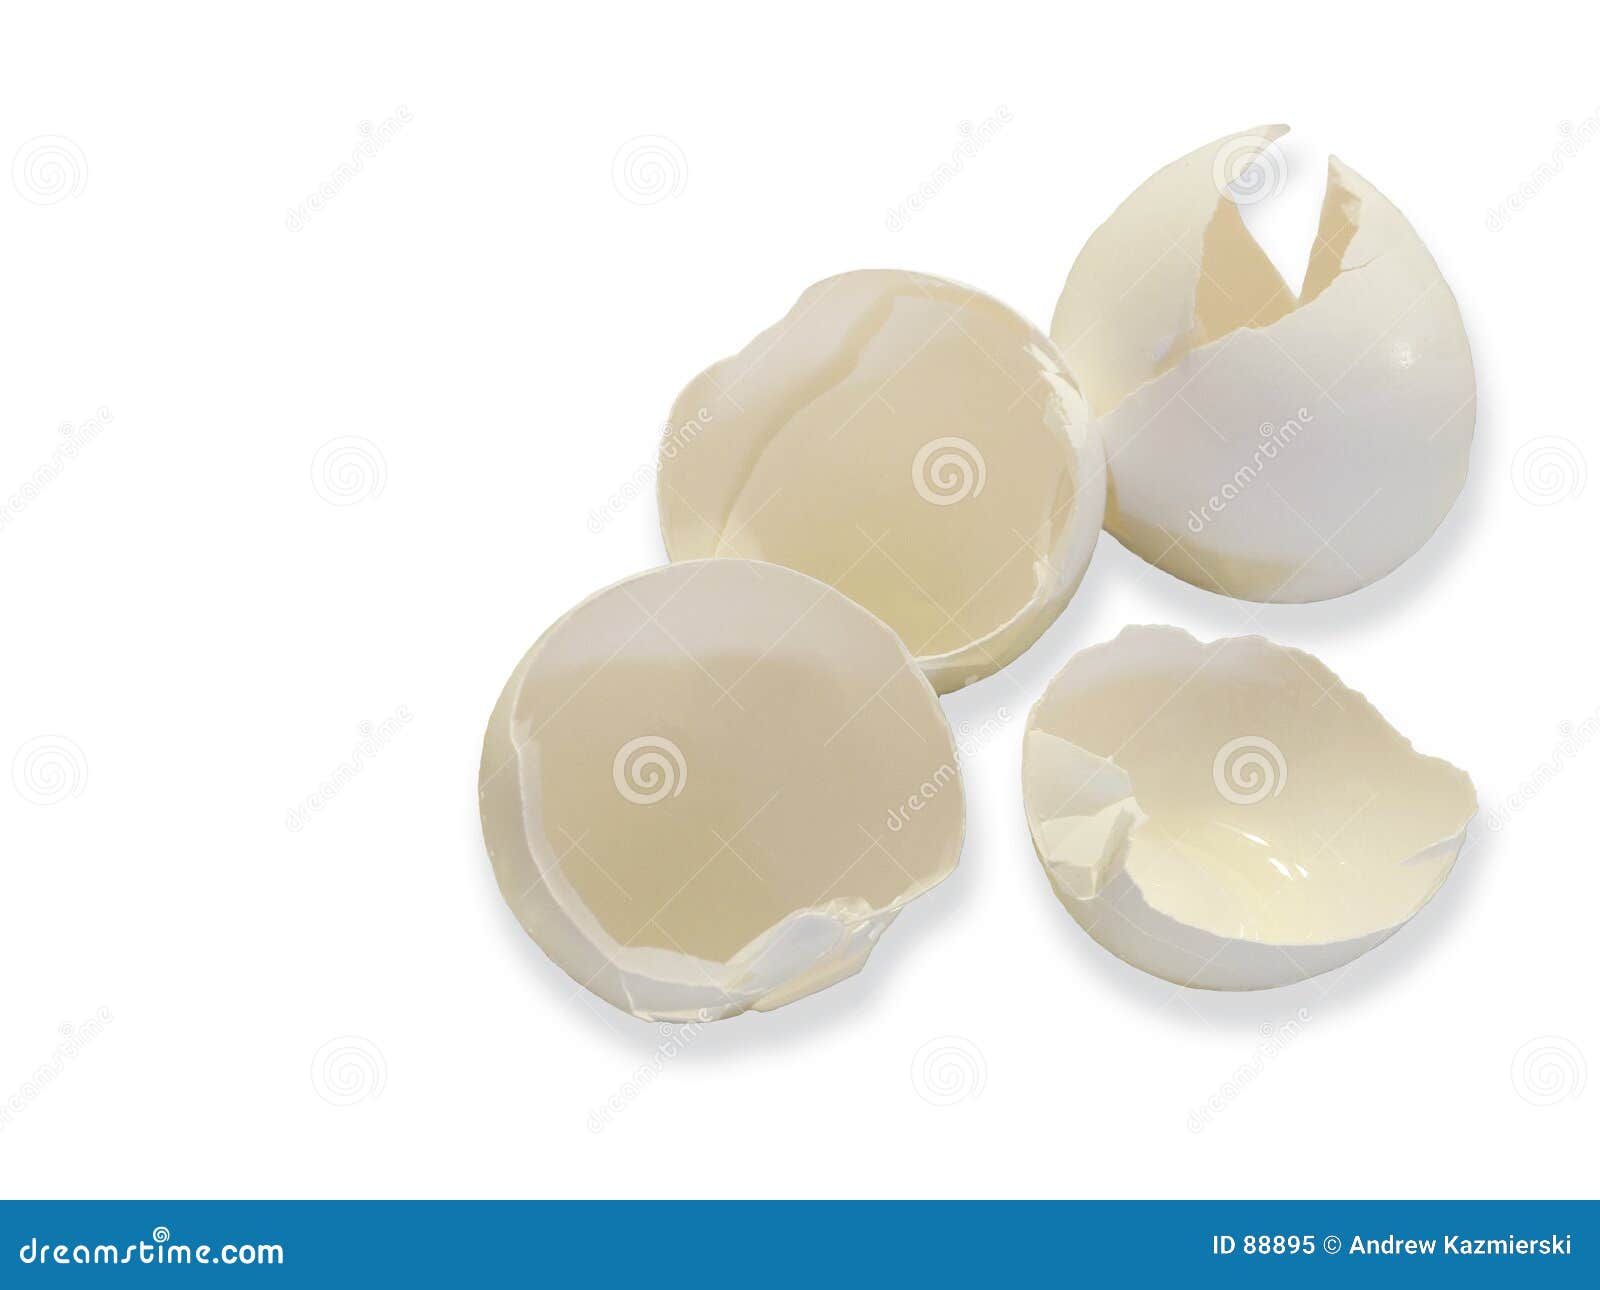 egg shells on white